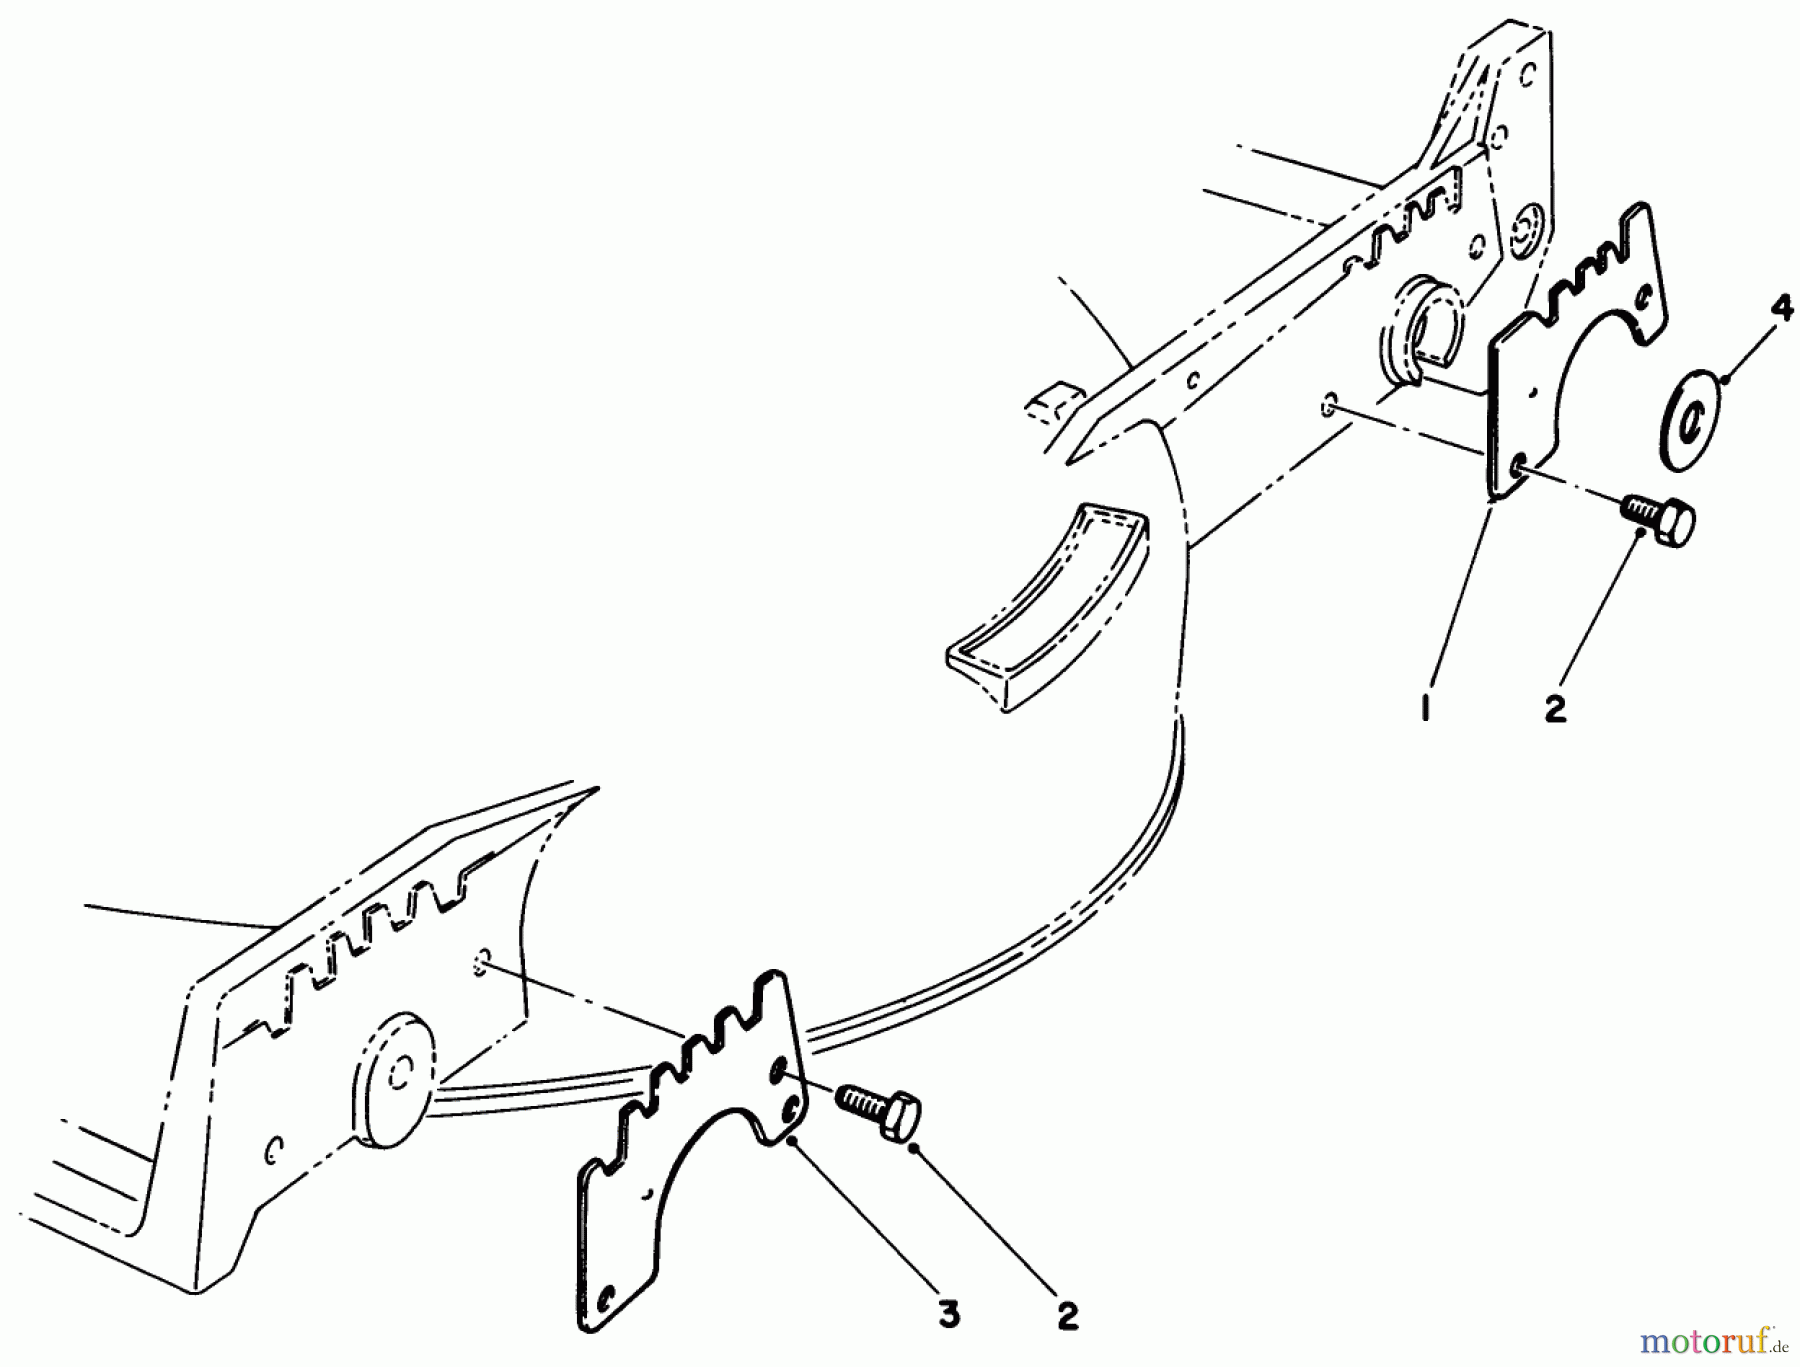  Toro Neu Mowers, Walk-Behind Seite 1 20582C - Toro Lawnmower, 1986 (6000001-6999999) WEAR PLATE KIT NO. 49-4080 (OPTIONAL)